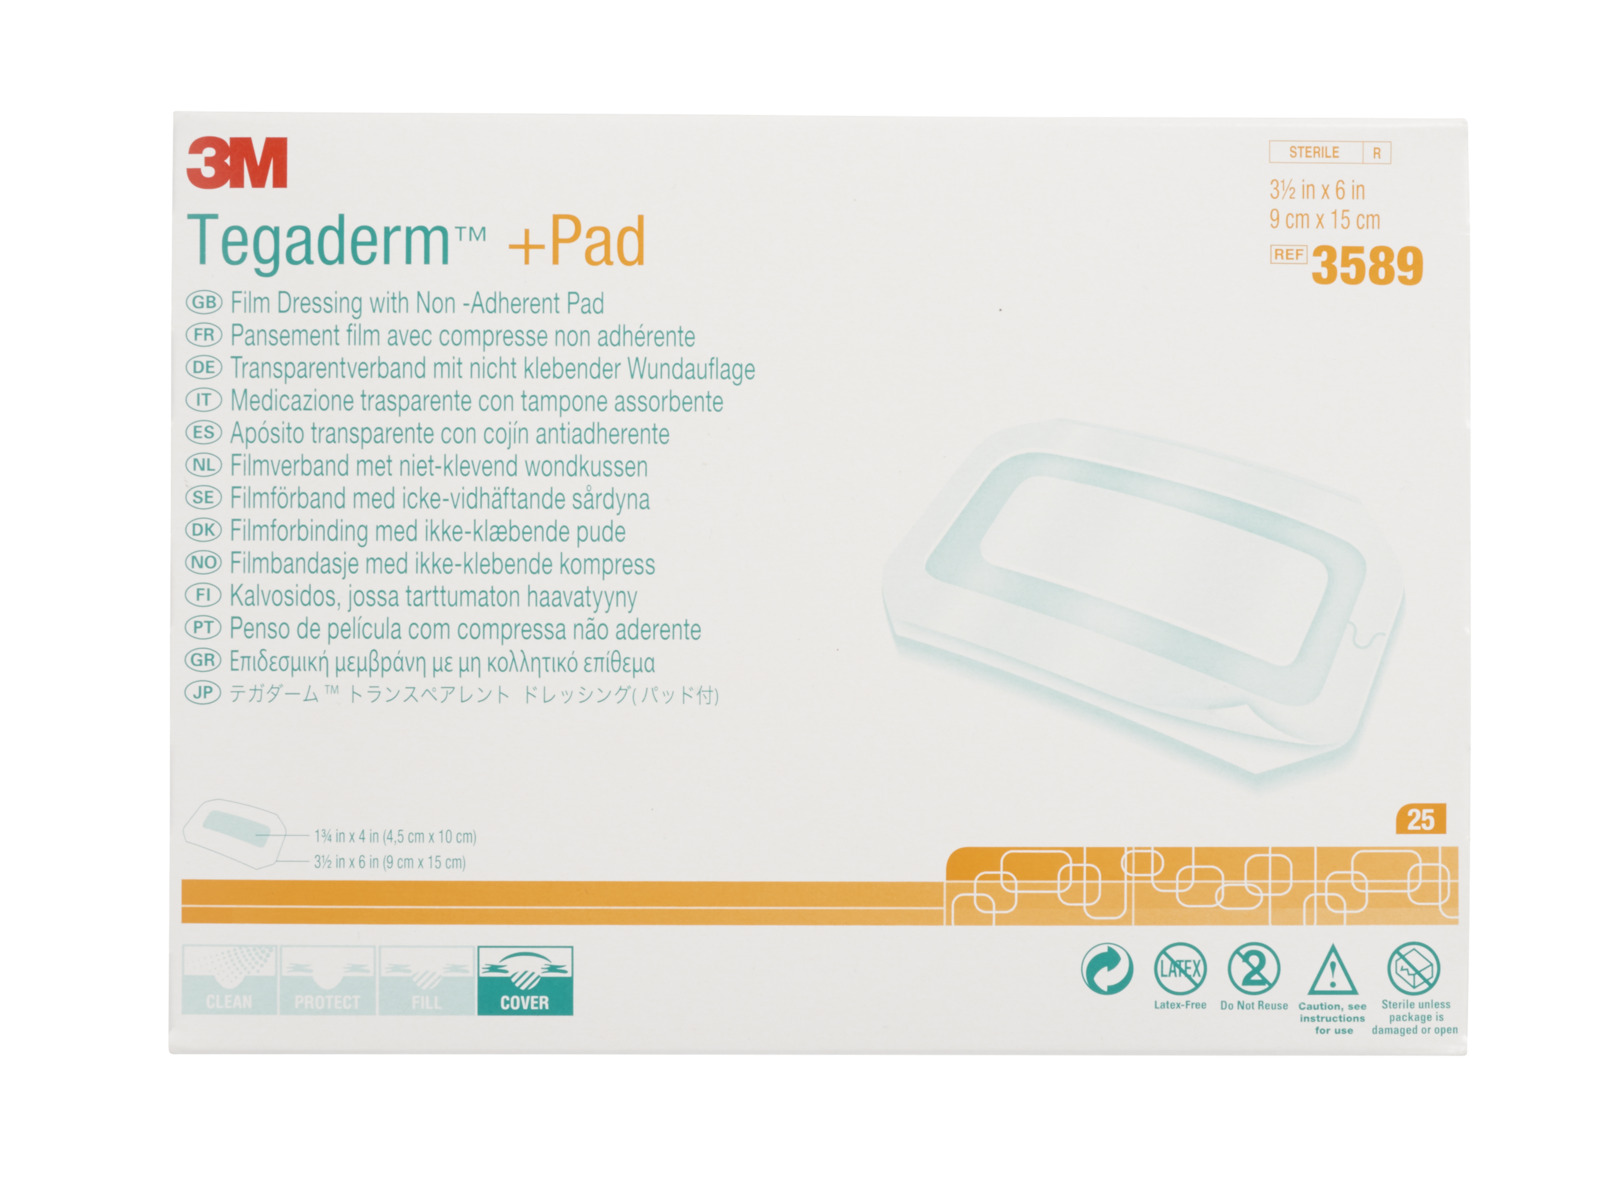 3M™ Tegaderm™+ PAD Transparentverband mit nicht klebender Wundauflage, 3589, 9 cm x 15 cm, 25 Stück/Packung